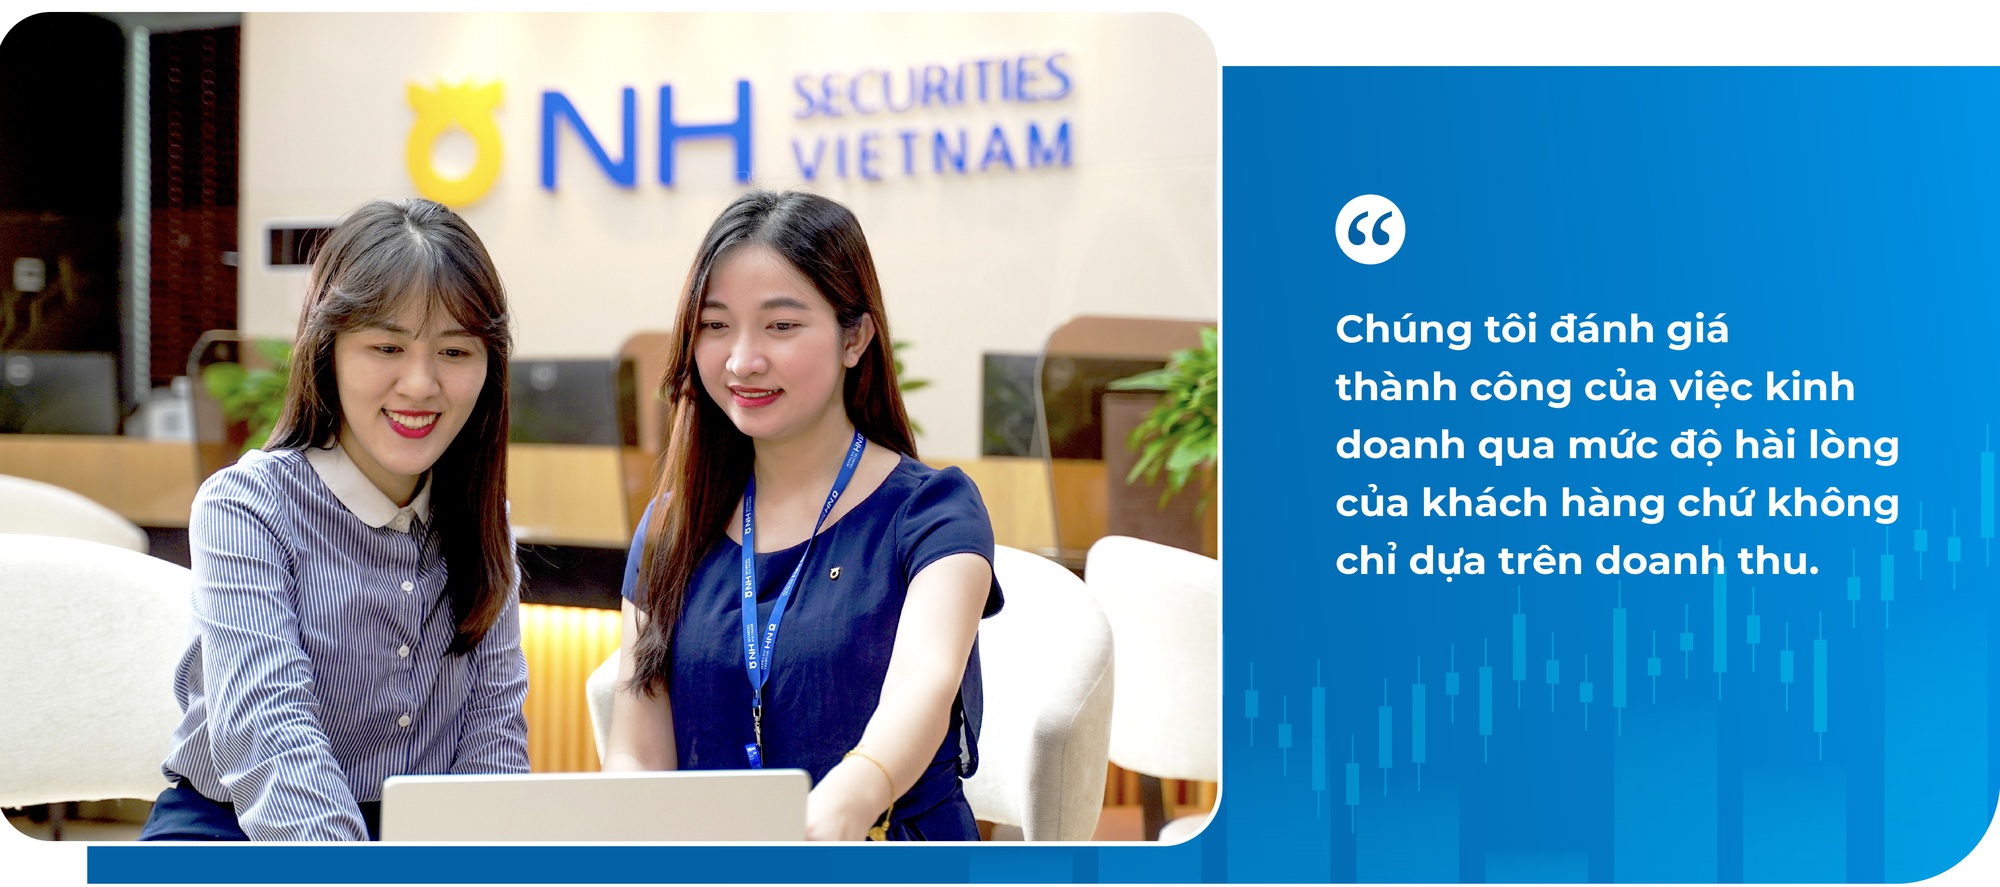 Chứng khoán NHSV và hành trình kiến tạo văn hoá đầu tư cho người Việt - Ảnh 5.